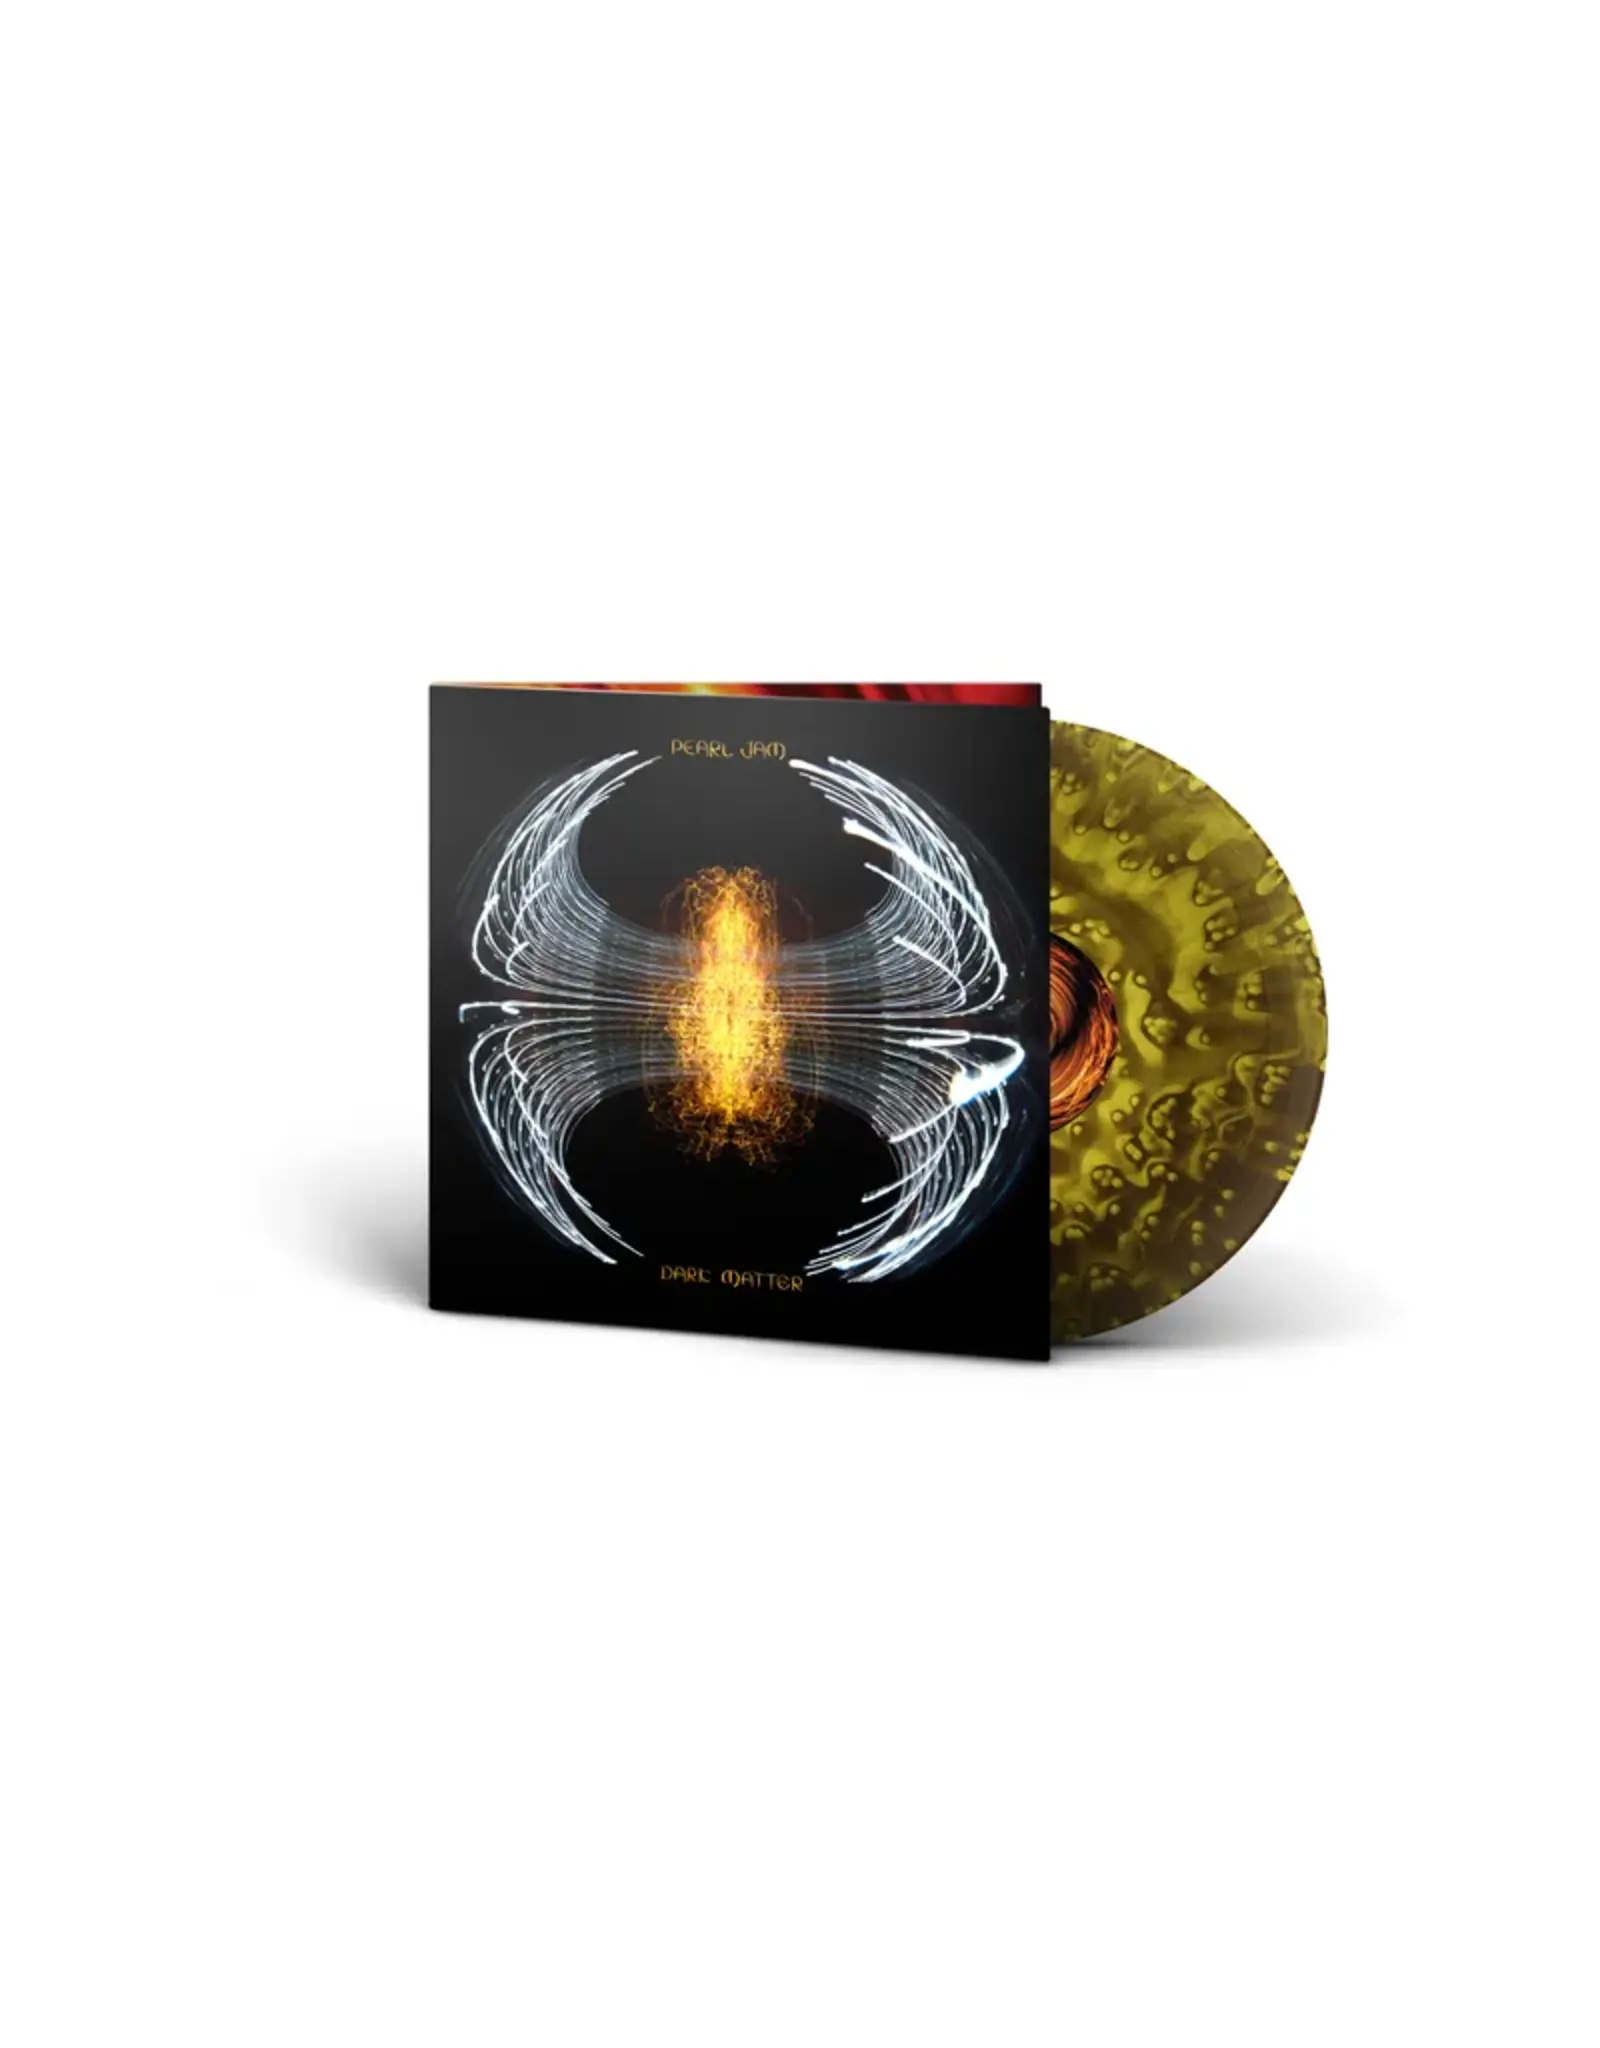 Pearl Jam - Dark Matter (Record Store Day) [Yellow & Black Swirl Vinyl]